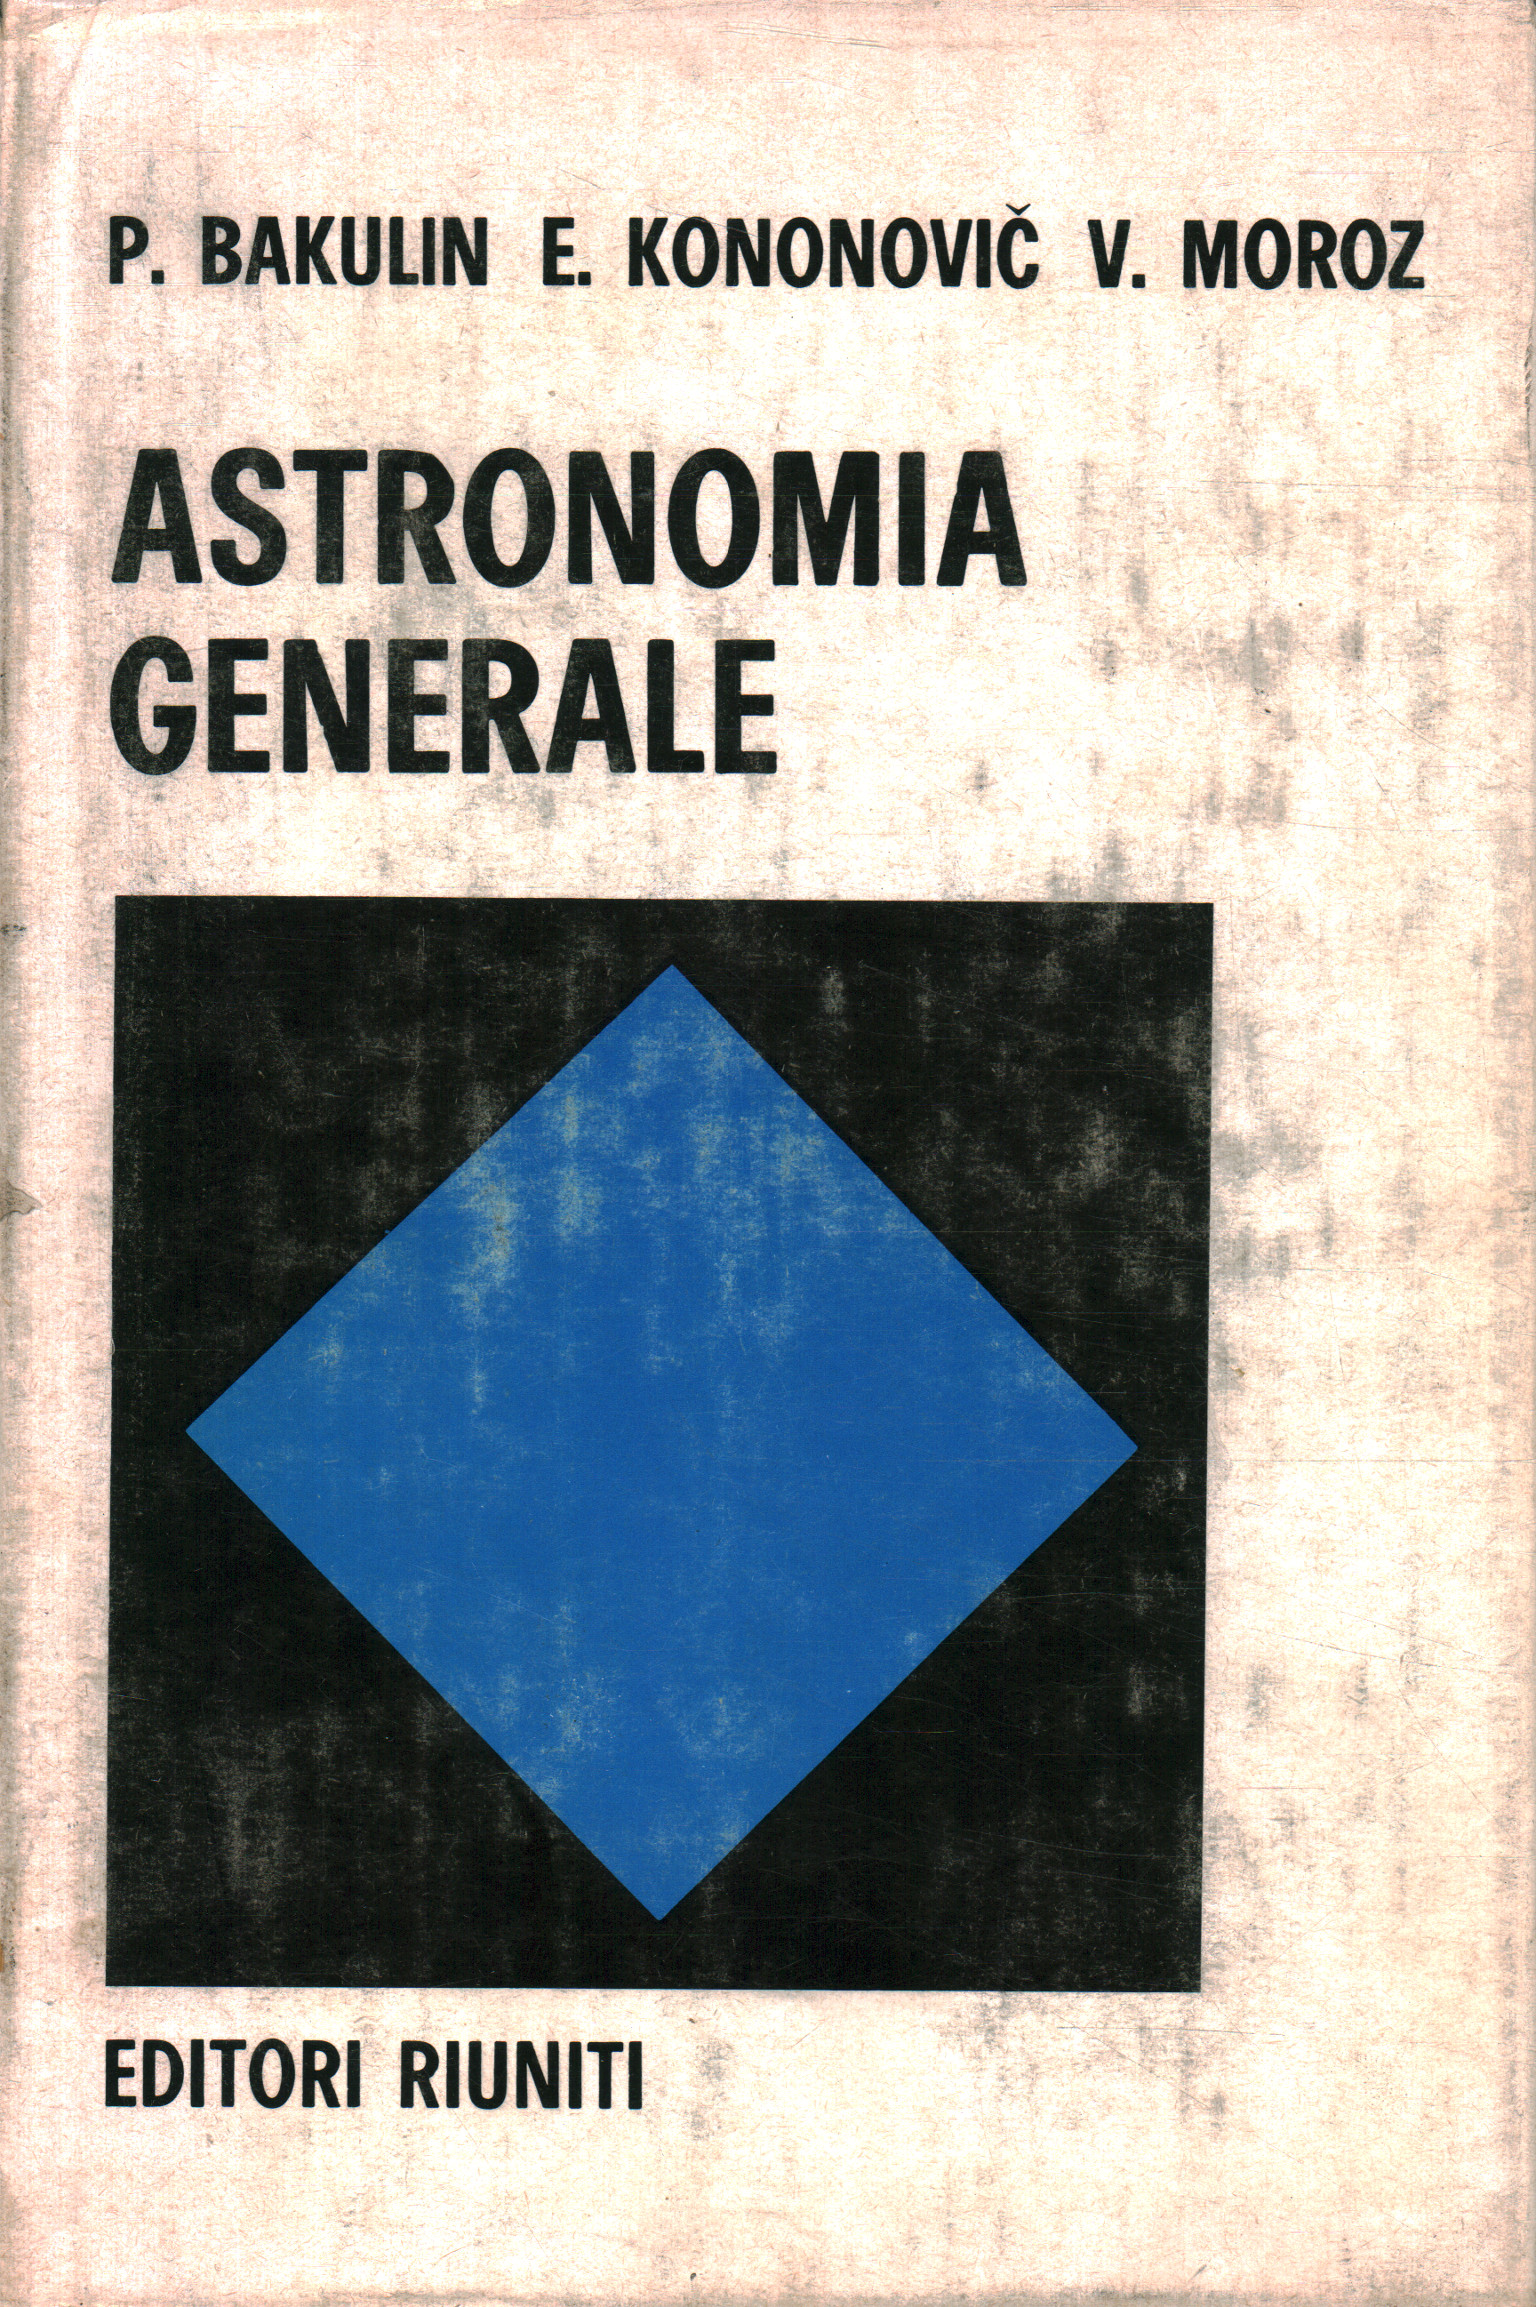 Astronomie générale